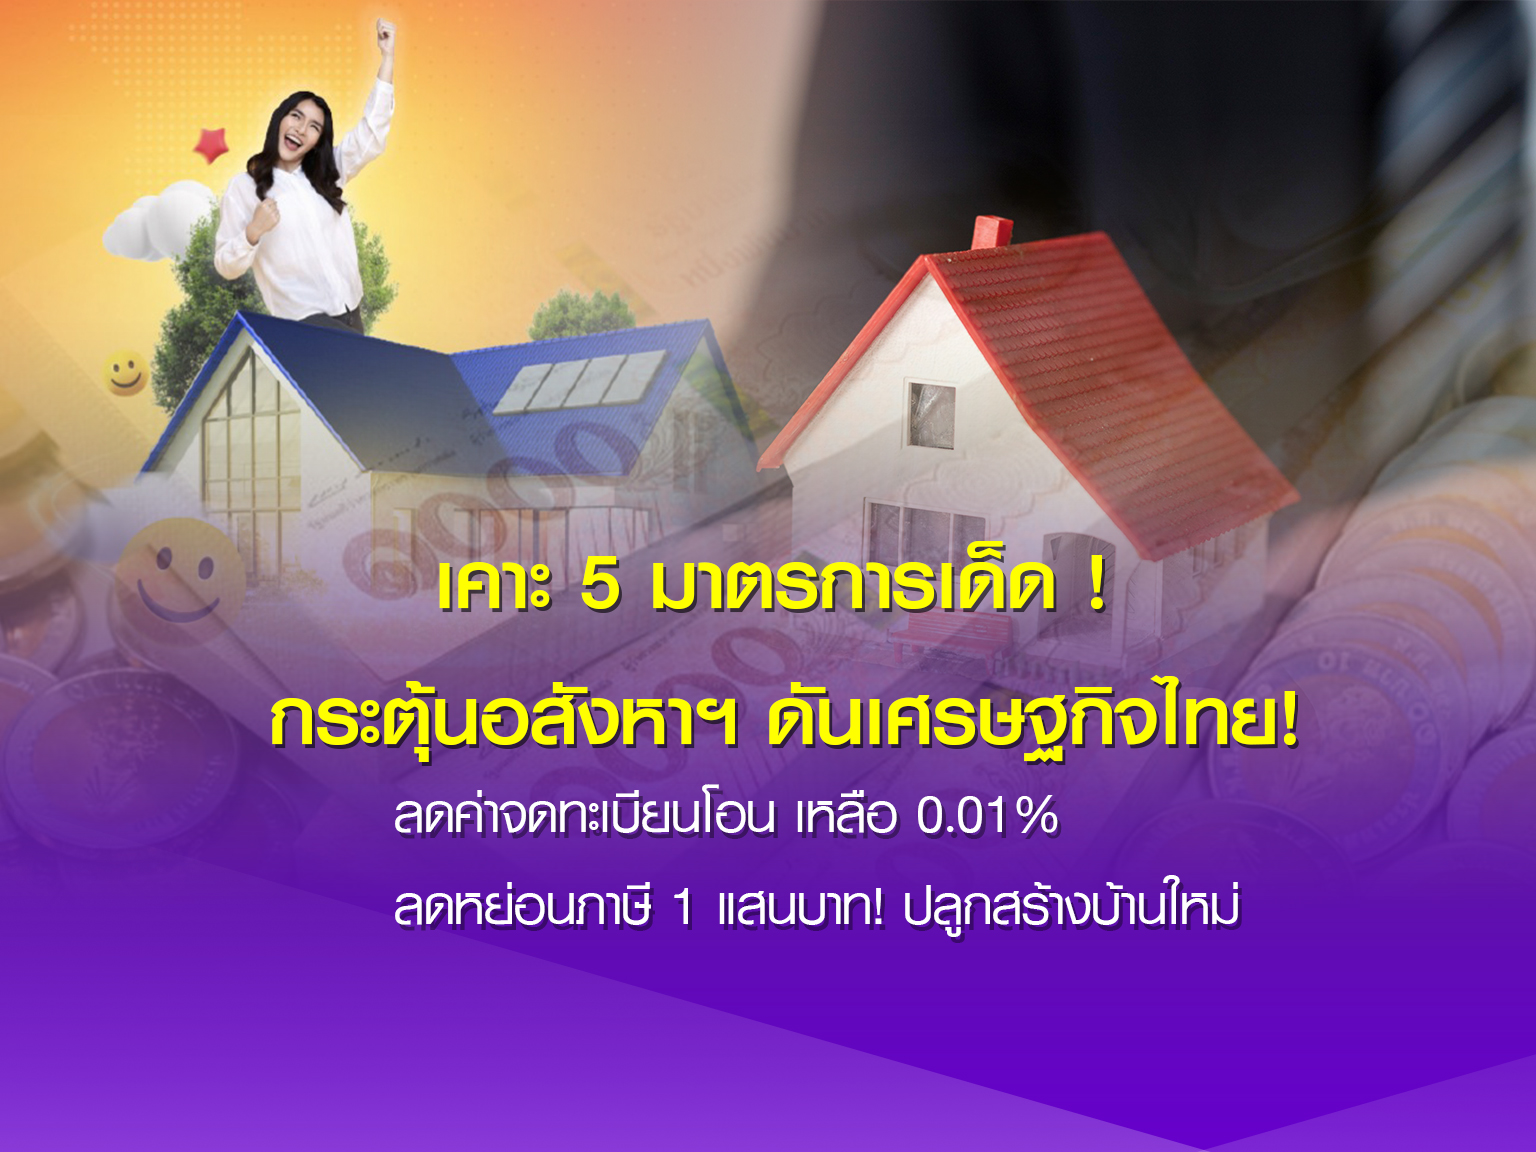  ครม. เคาะ 5 มาตรการเด็ด กระตุ้นอสังหาฯ ดันเศรษฐกิจไทย! เตรียมการเพื่อรองรับการดำเนินการยกระดับประเทศไทยสู่ศูนย์กลางเมืองแห่งอุตสาหกรรมระดับโลก (Thailand Vision)